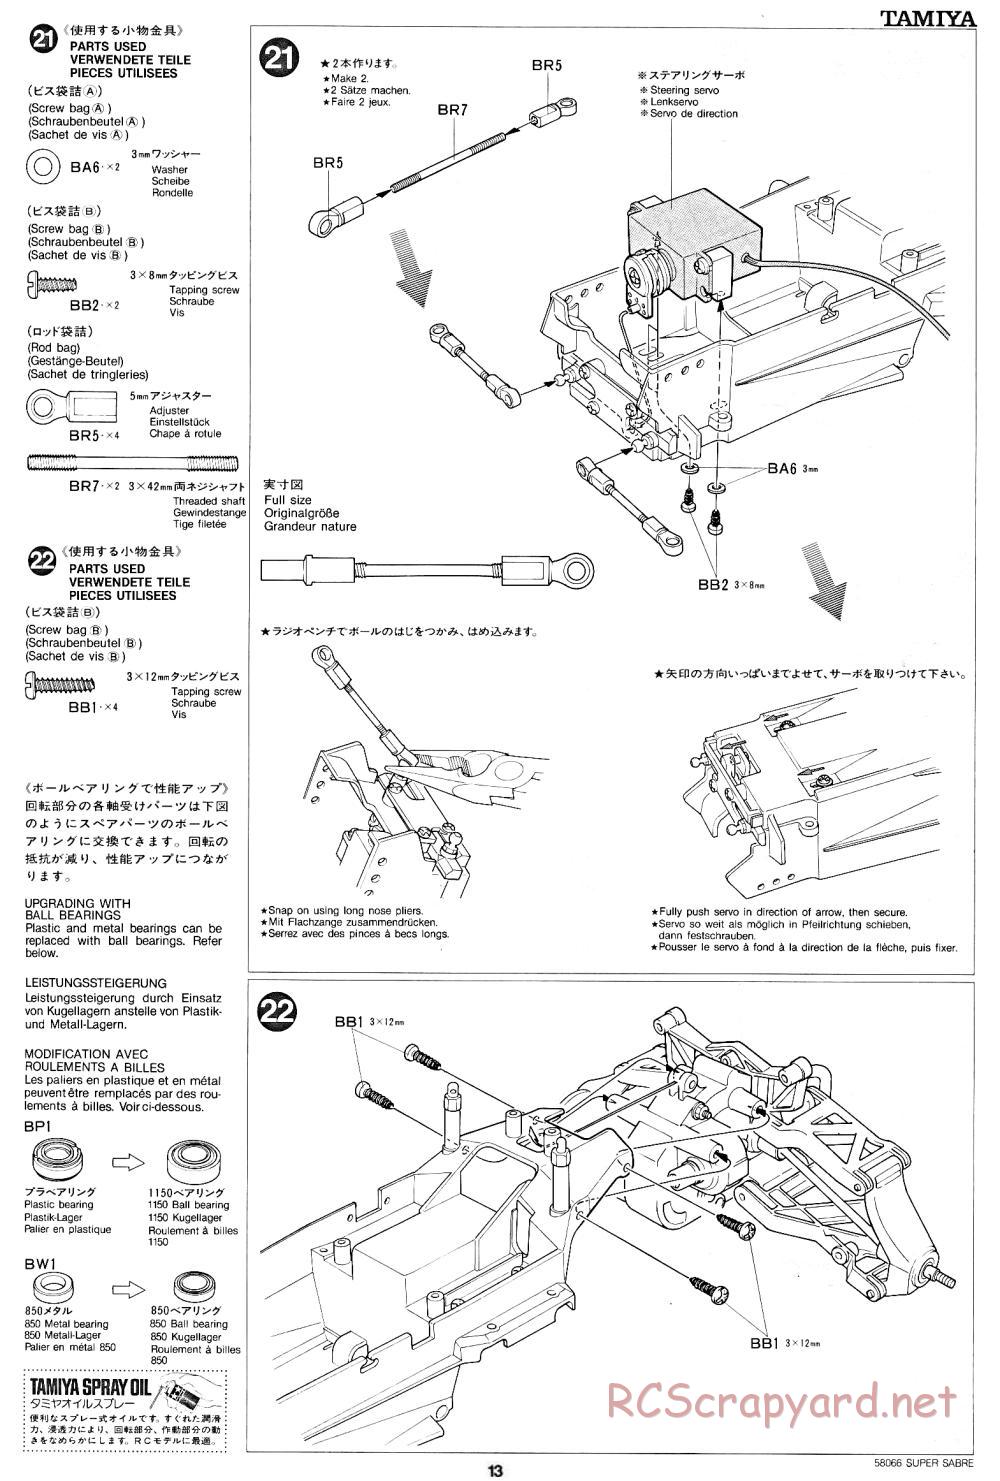 Tamiya - Super Sabre - 58066 - Manual - Page 13